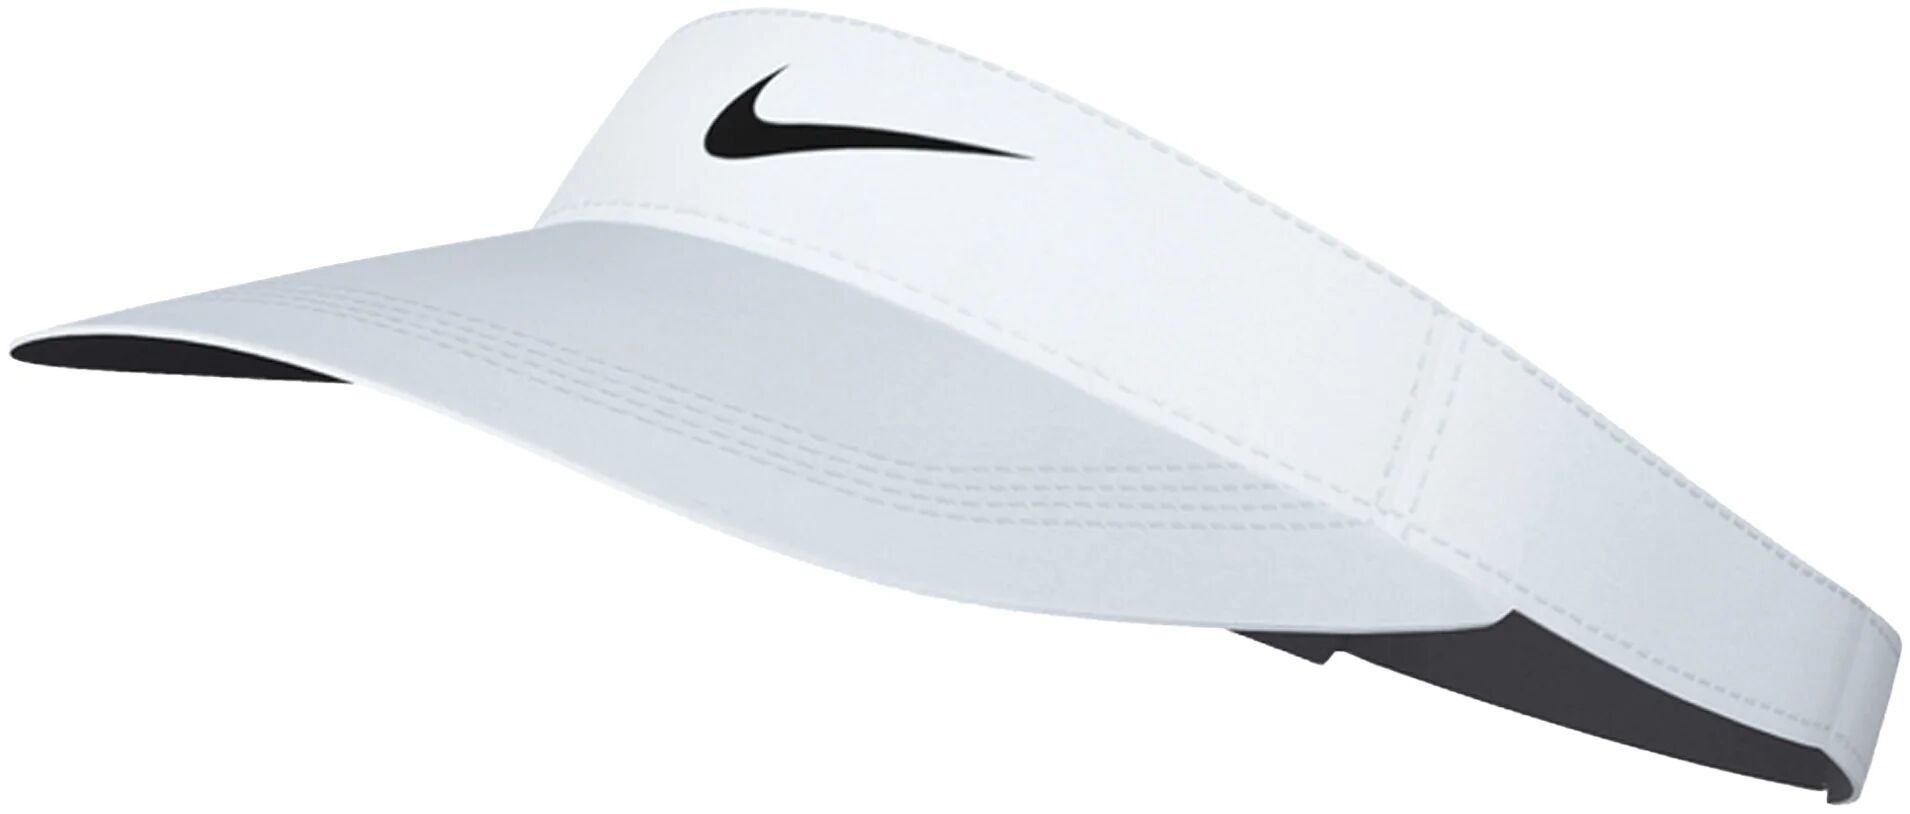 Nike Dri-FIT Ace Swoosh Men's Golf Visor - White, Size: Medium/Large